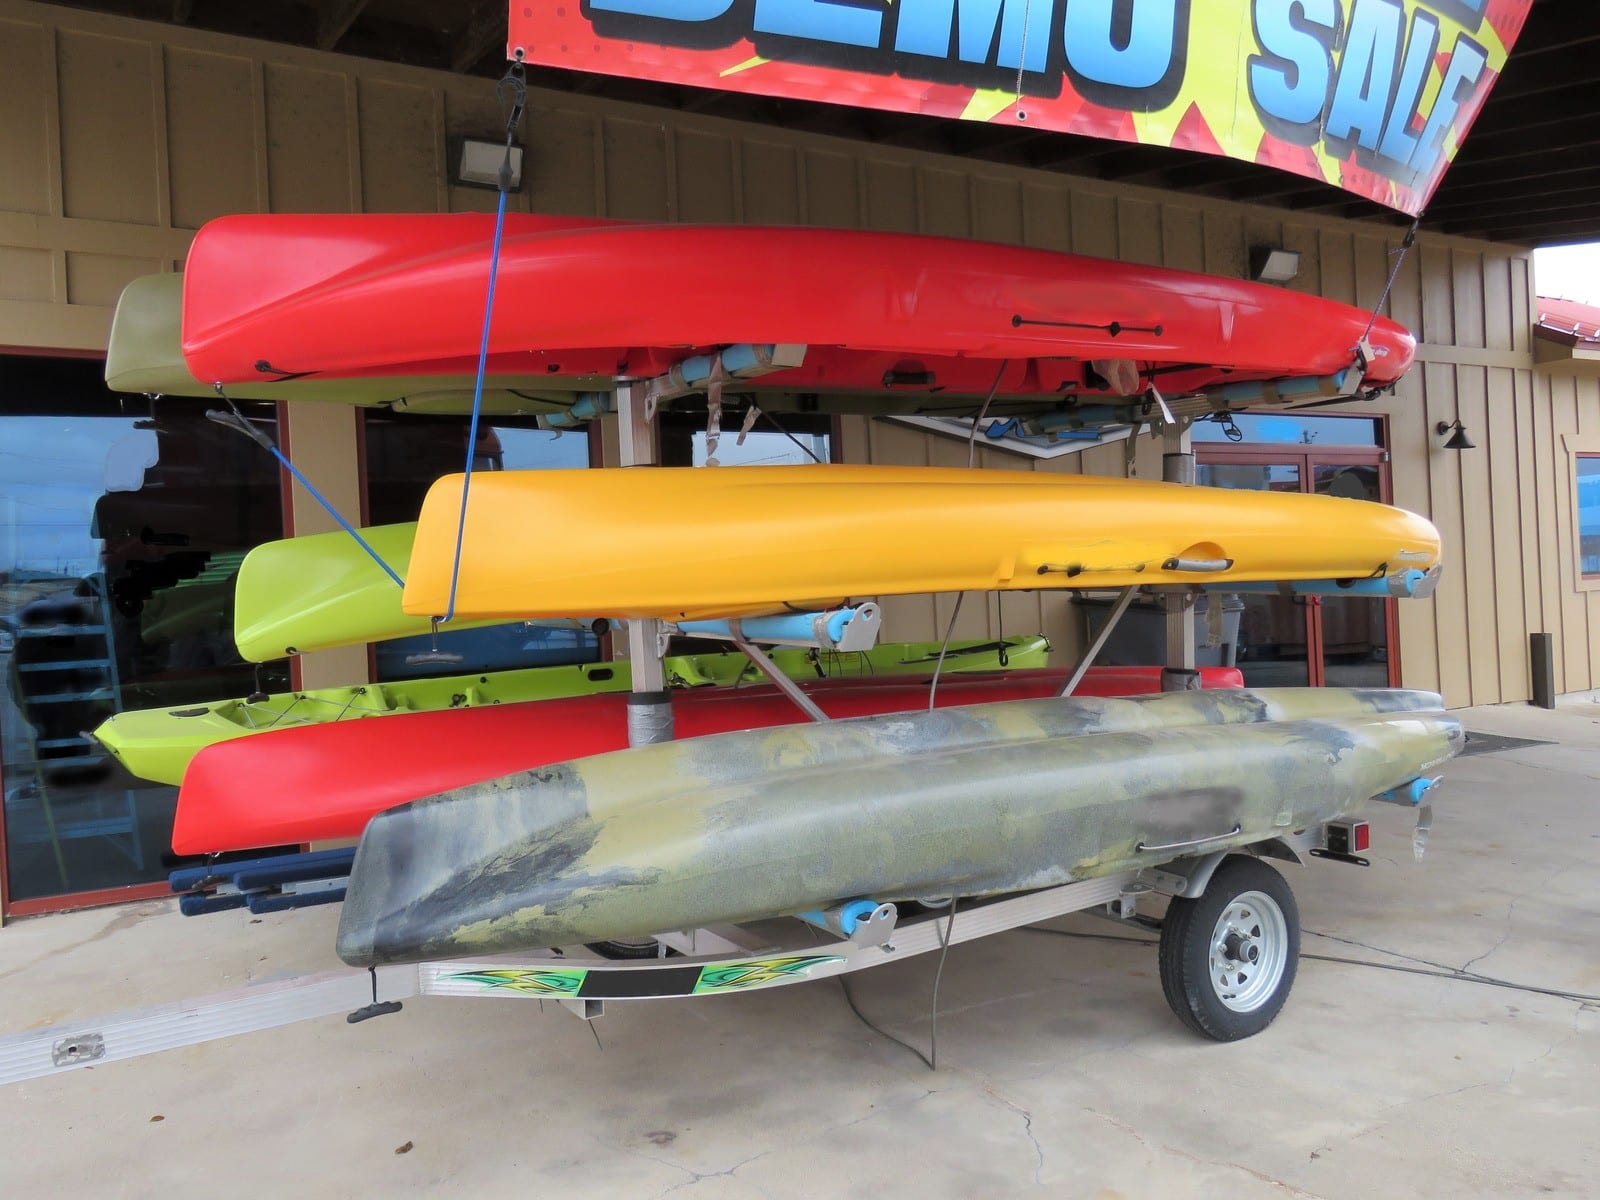 kayak rental gear for sale